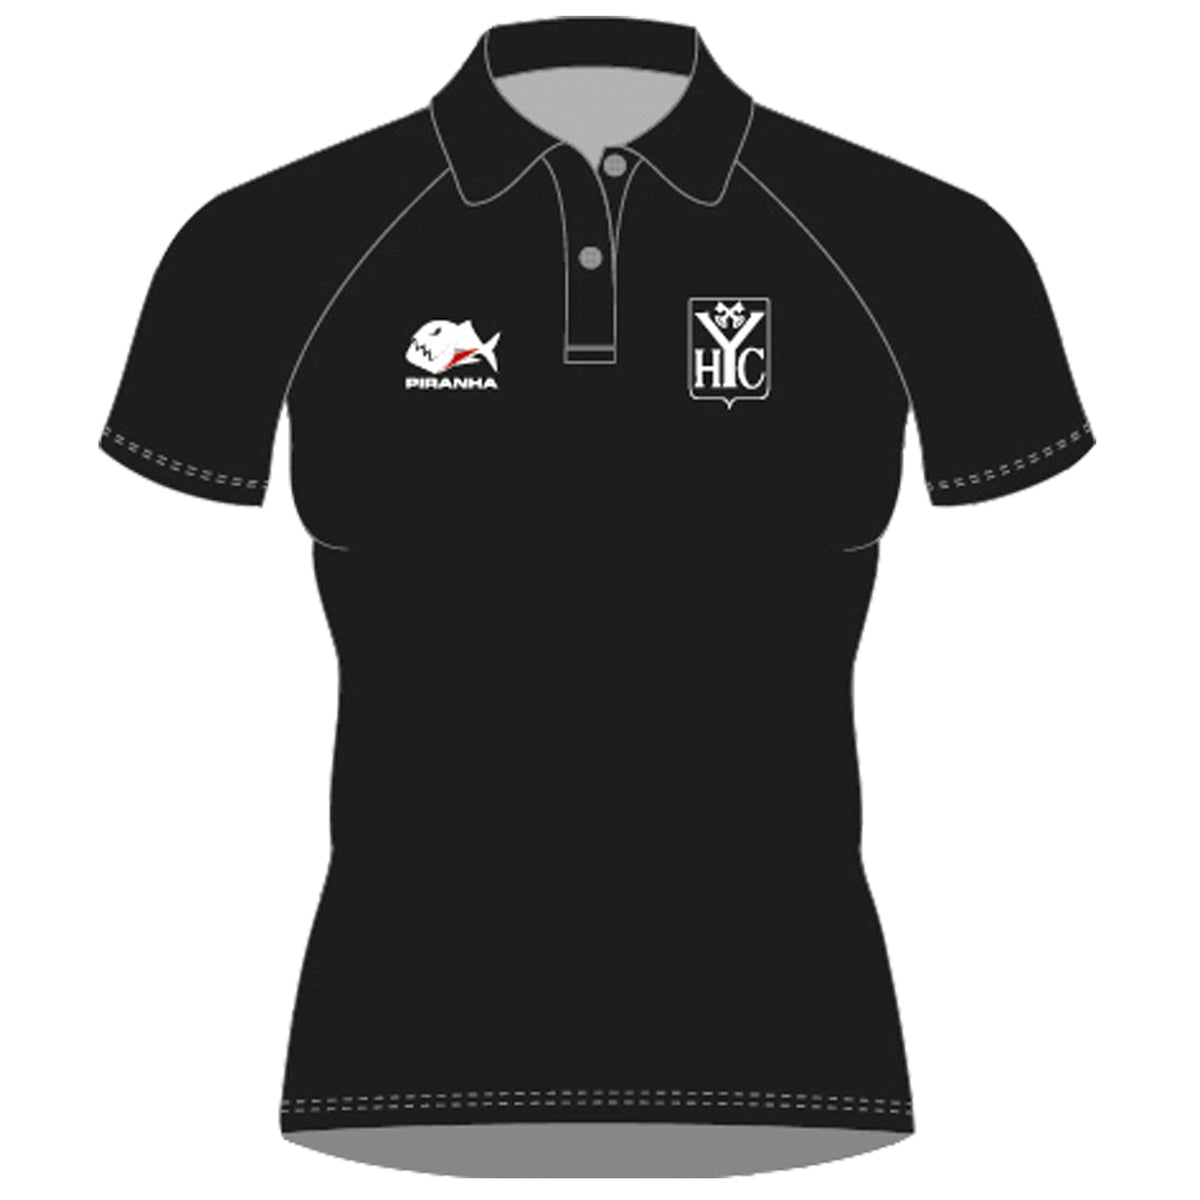 Yateley HC Ladies Club Polo Shirt